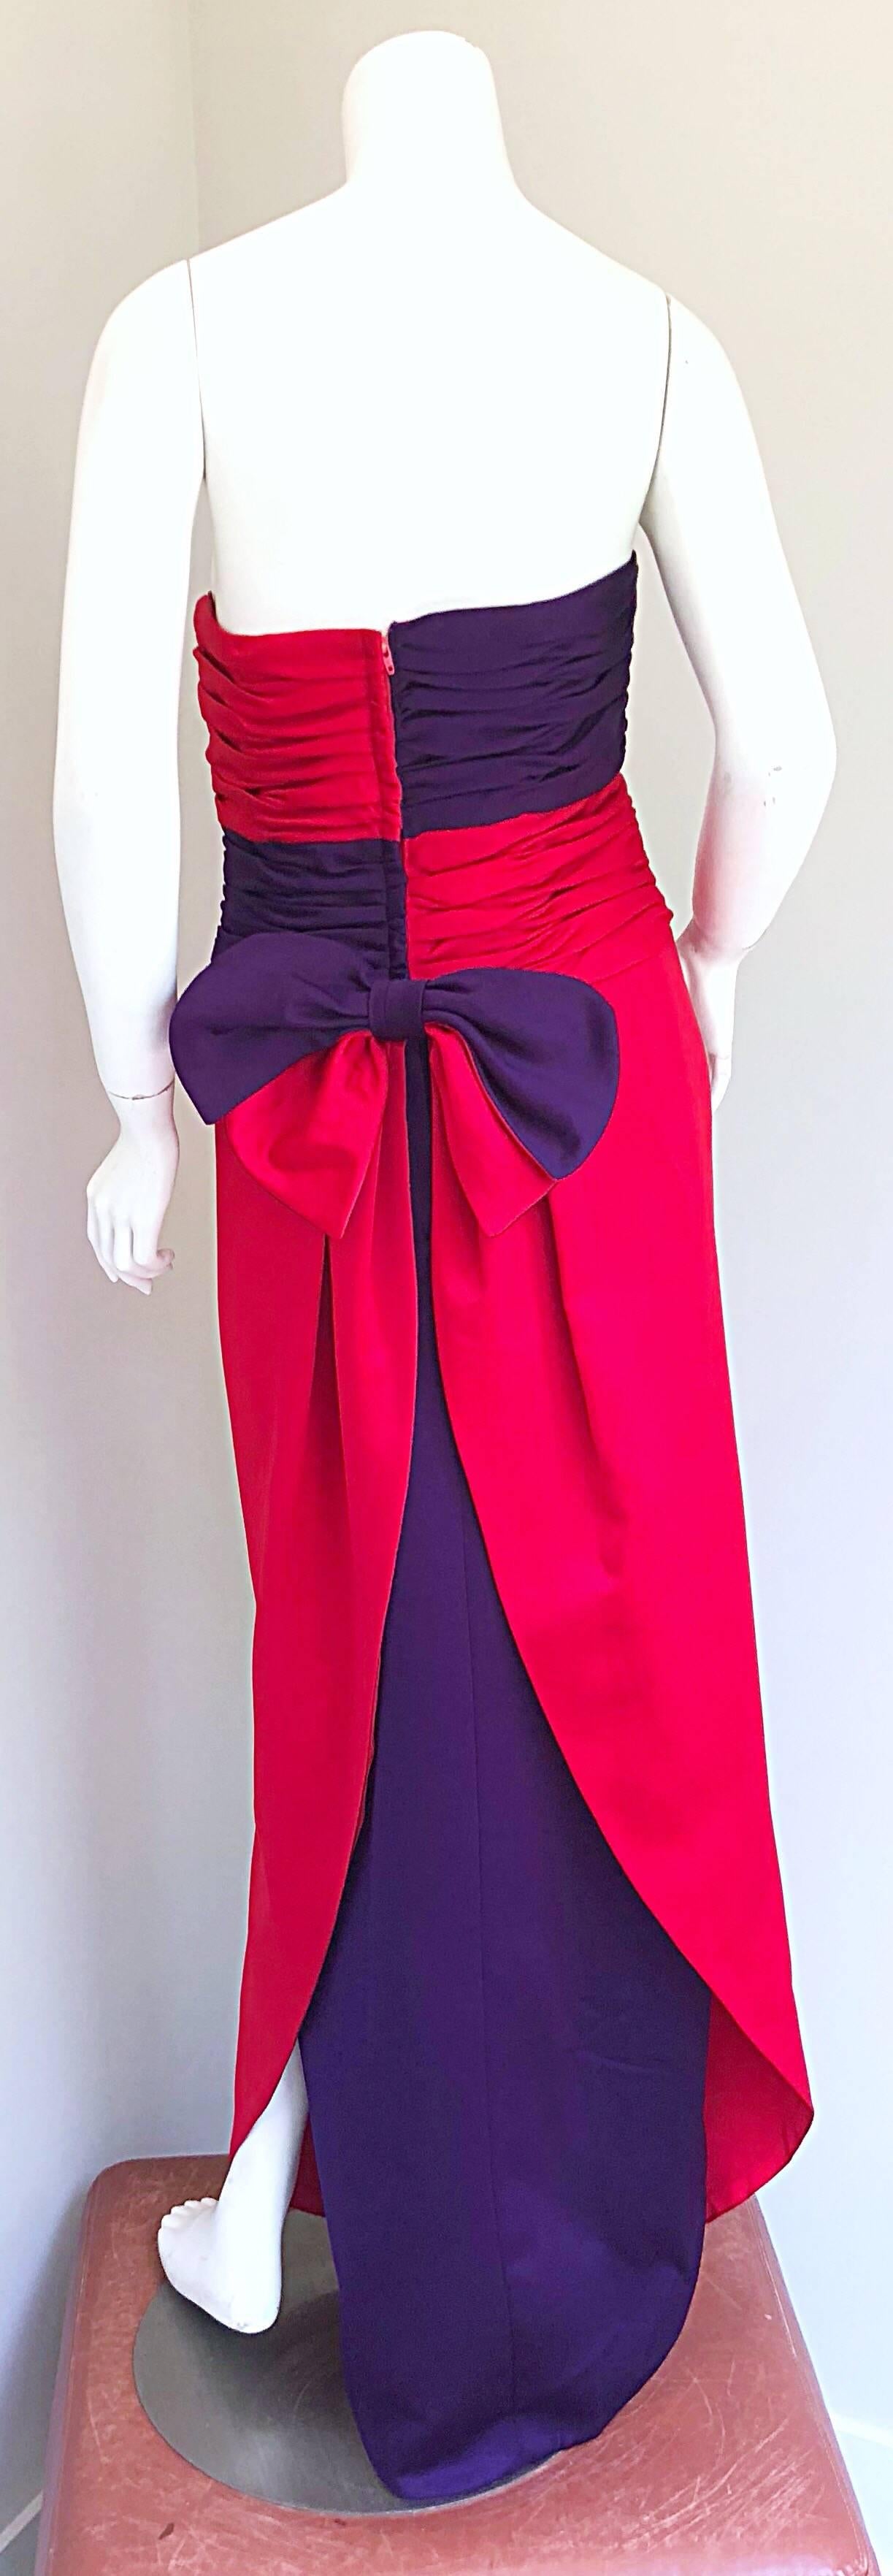 Elegantes Vintage VICKY TIEL COUTURE für BERGDORF GOODMAN rotes und lila Seidensatin trägerloses Abendkleid! Mit schmeichelhaften Rüscheneinsätzen in einem königlichen Lila und Lippenstiftrot. Weiche geschwungene ihn mit einem lila Satin unter Rock